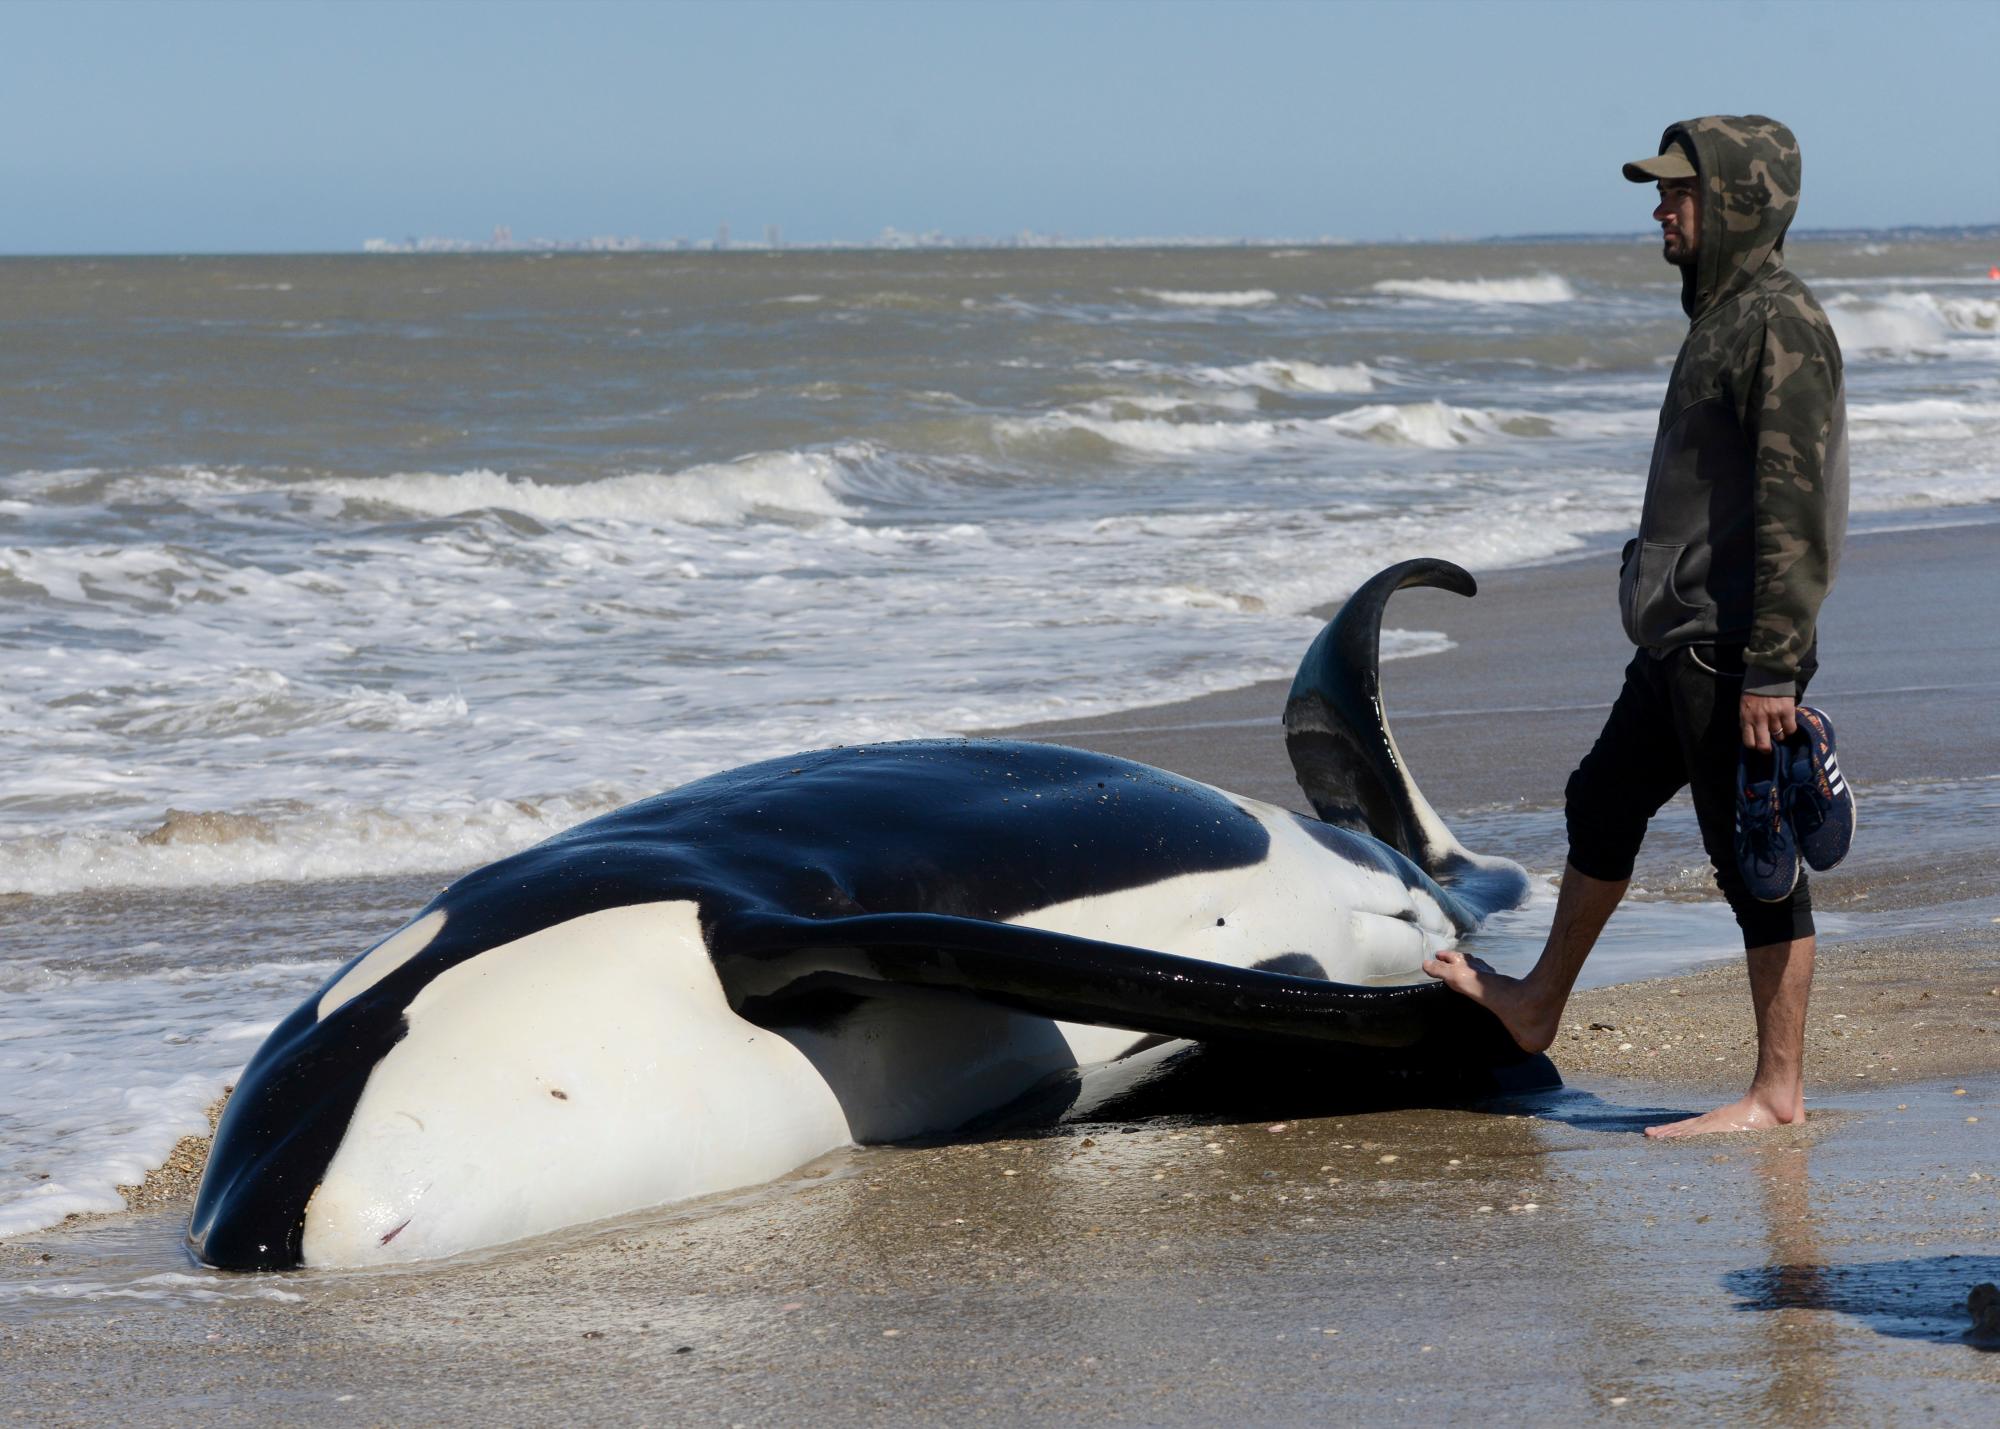 Un hombre se encuentra junto a una orca muerta cerca de Mar Chiquita, Argentina, el lunes 16 de septiembre de 2019. Siete orcas fueron varadas en la costa antes de que los rescatistas y voluntarios devolvieran seis de ellas al mar, pero una murió en el proceso.